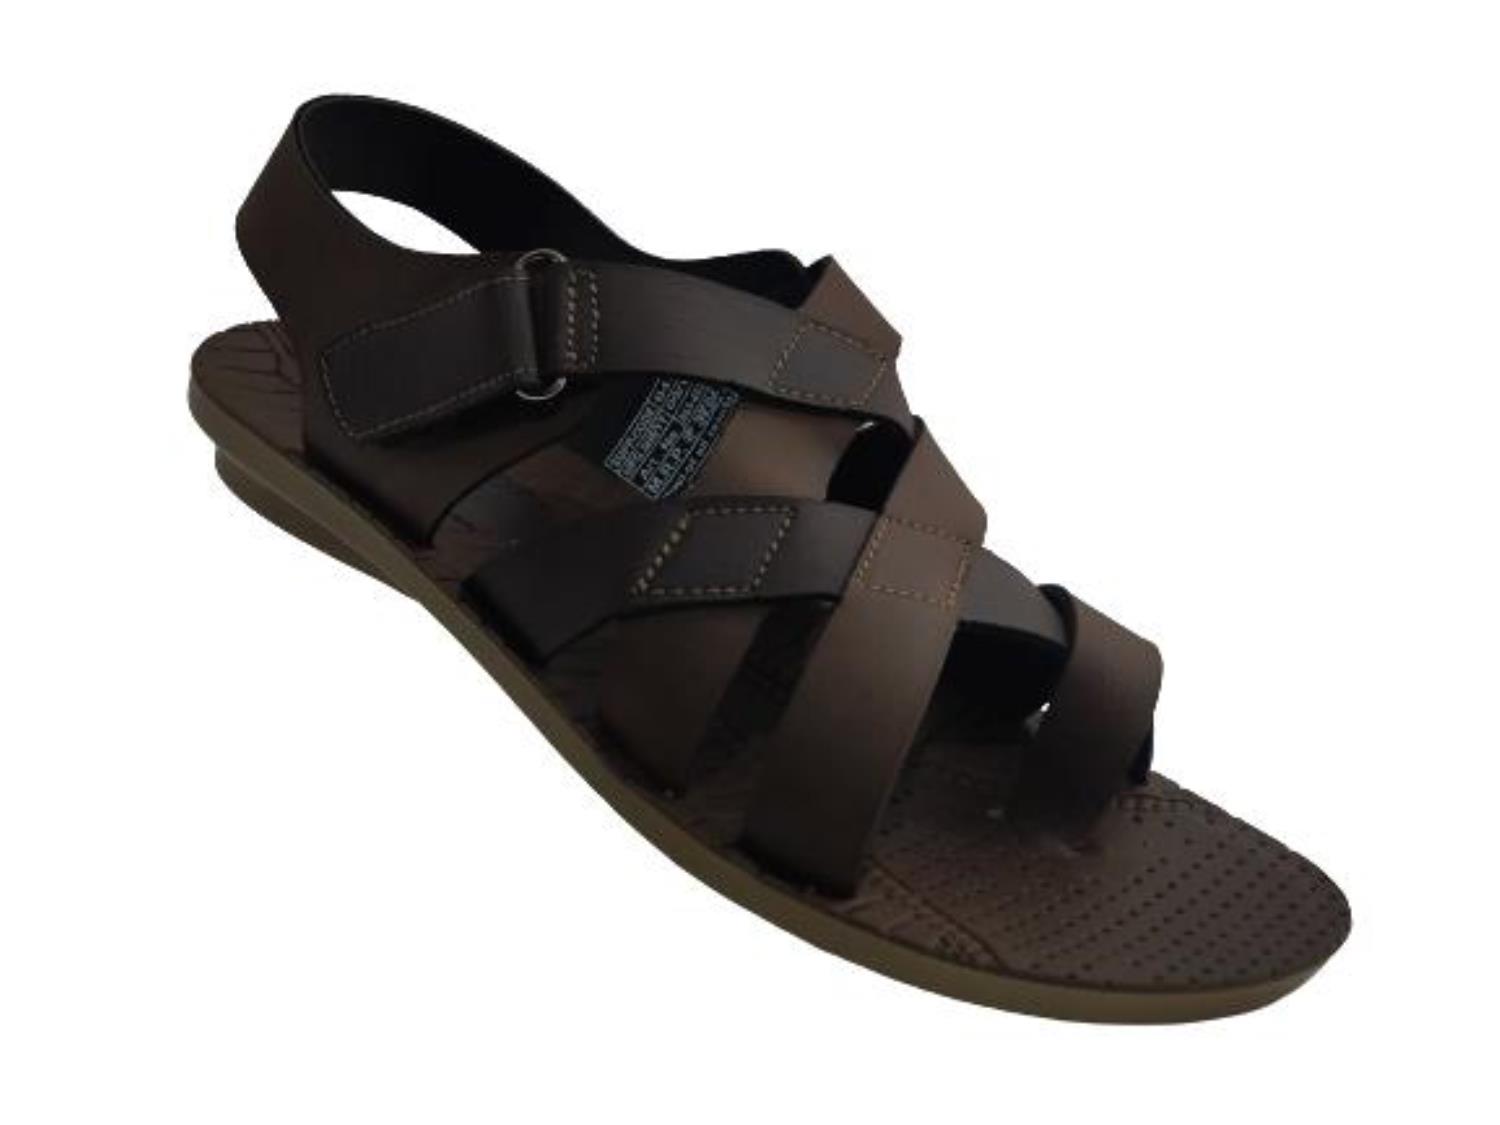 Bata Brand Men's Casual Sandal 861-4937 (Brown) :: RAJASHOES